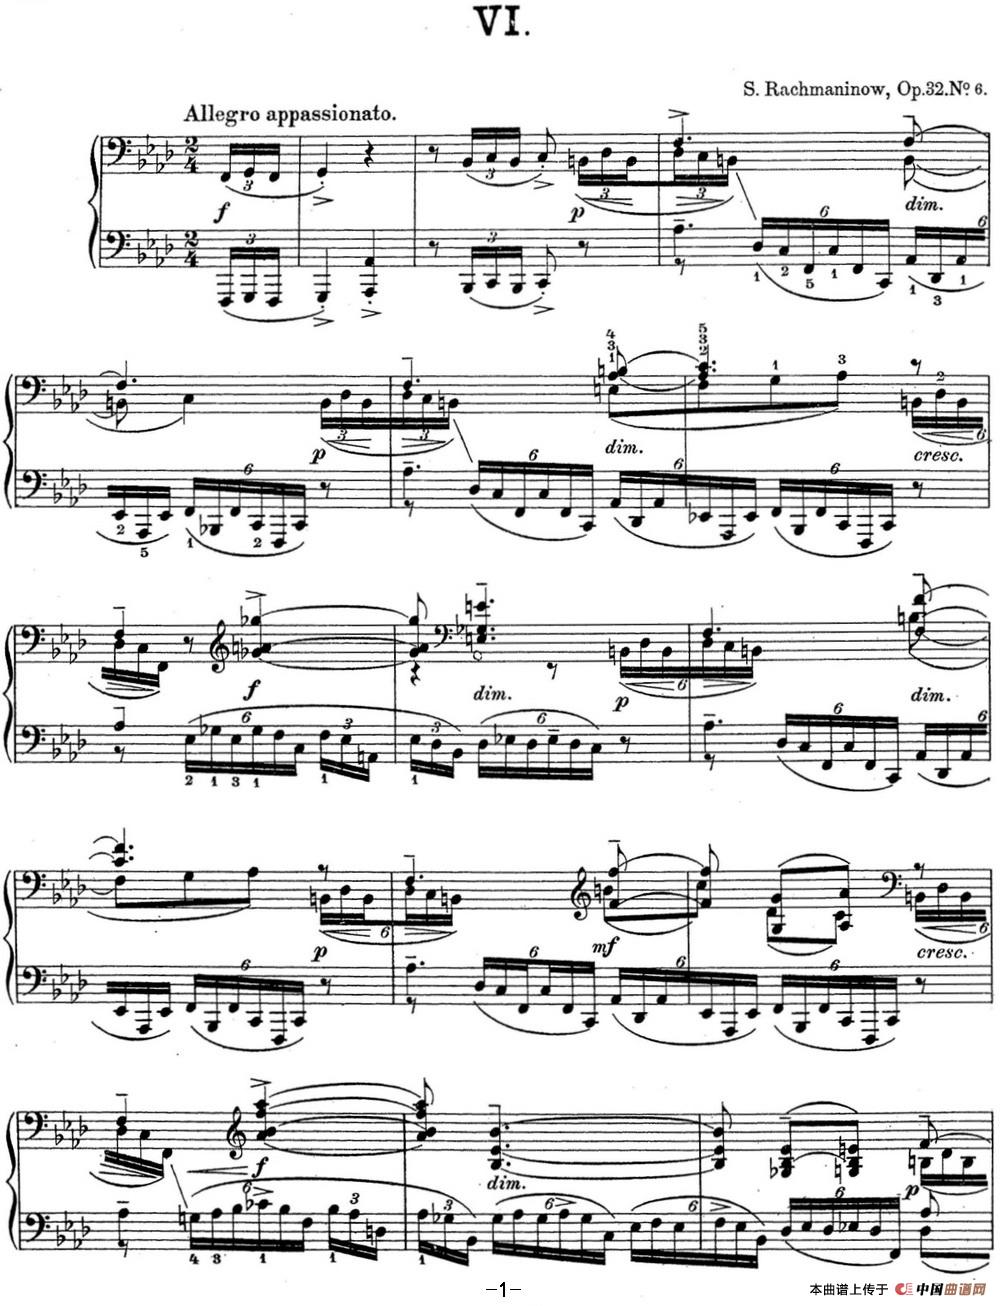 《拉赫玛尼诺夫 钢琴前奏曲17 F小调 Op.32 No.6》钢琴曲谱图分享